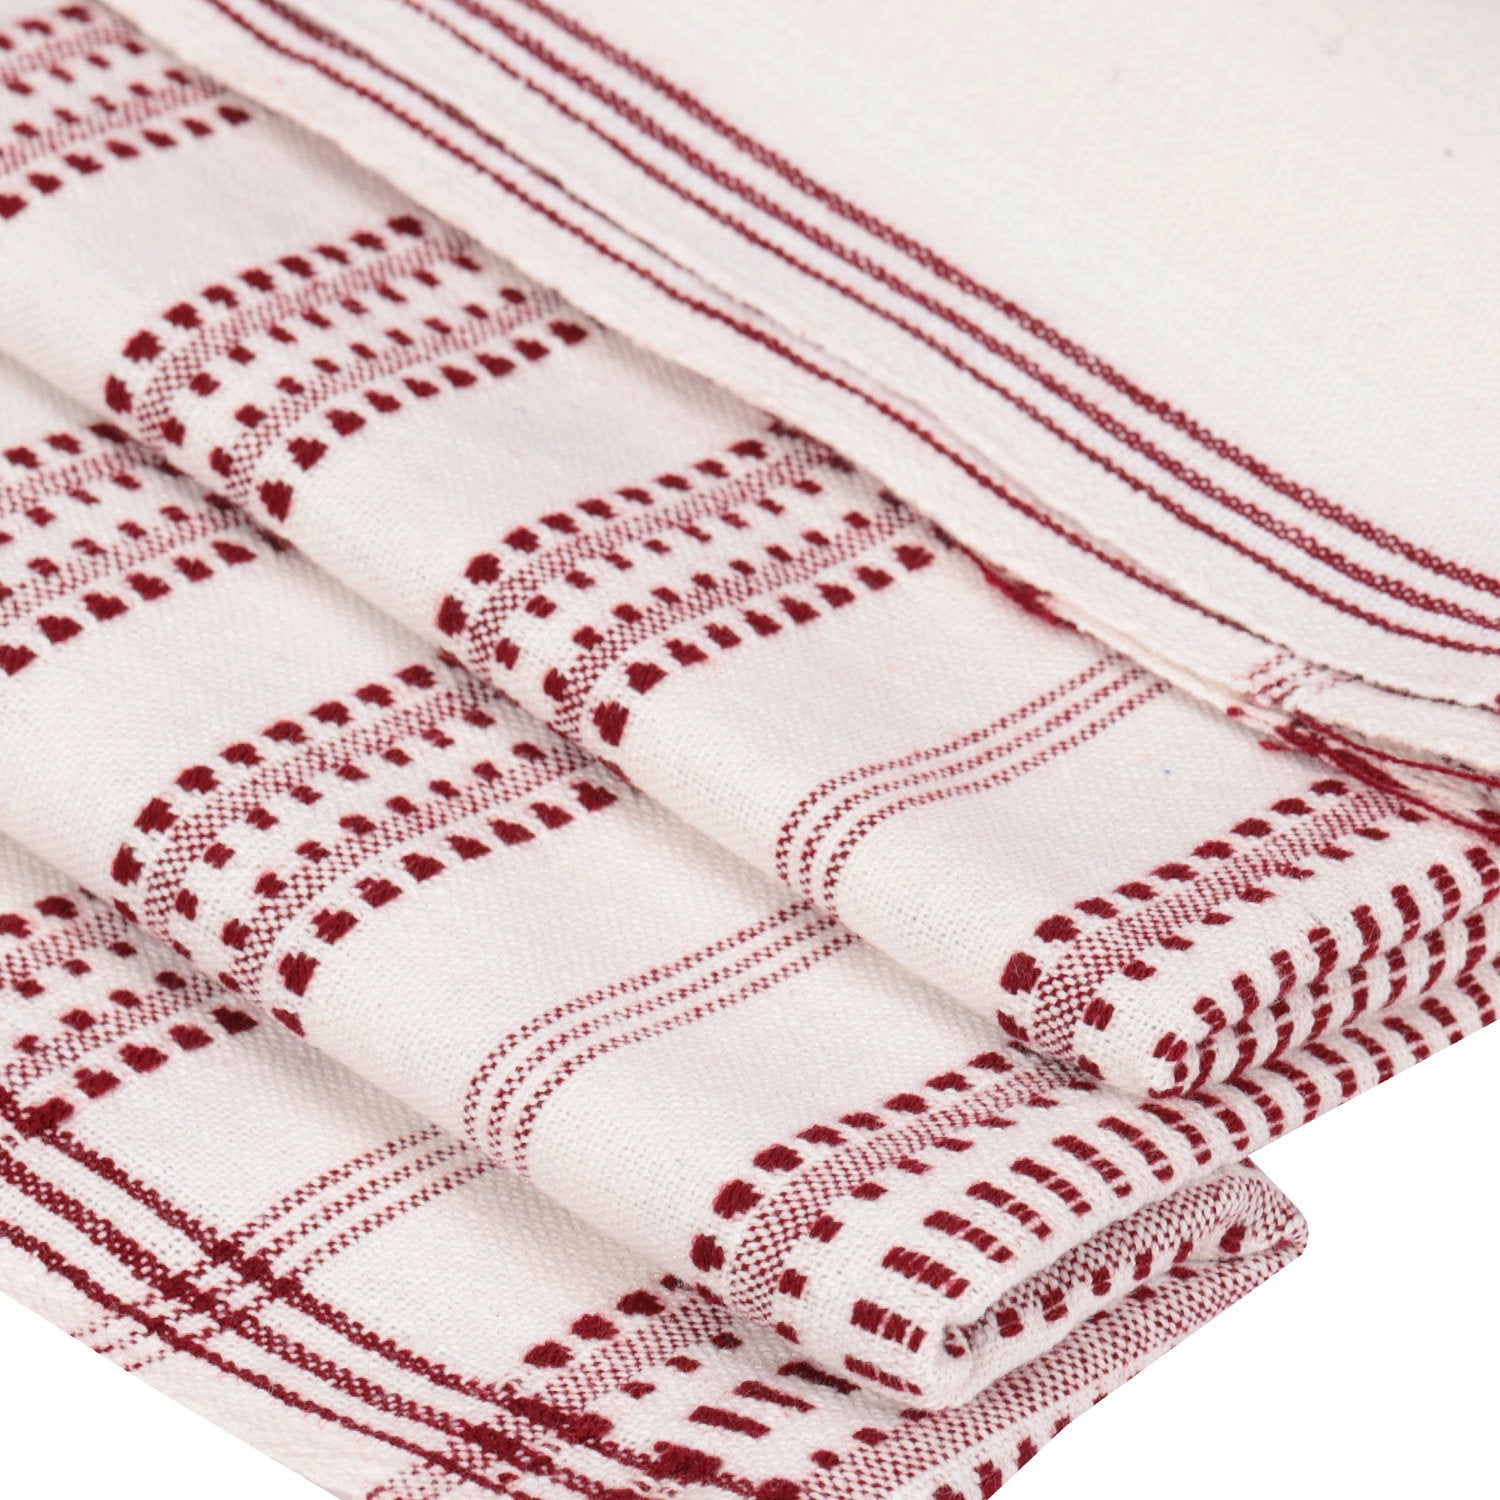 Handmade striped linen towel / Linen bath towel / Fringed linen hand towel  / Thick striped linen towels / Linen rustic towel / yoga towel